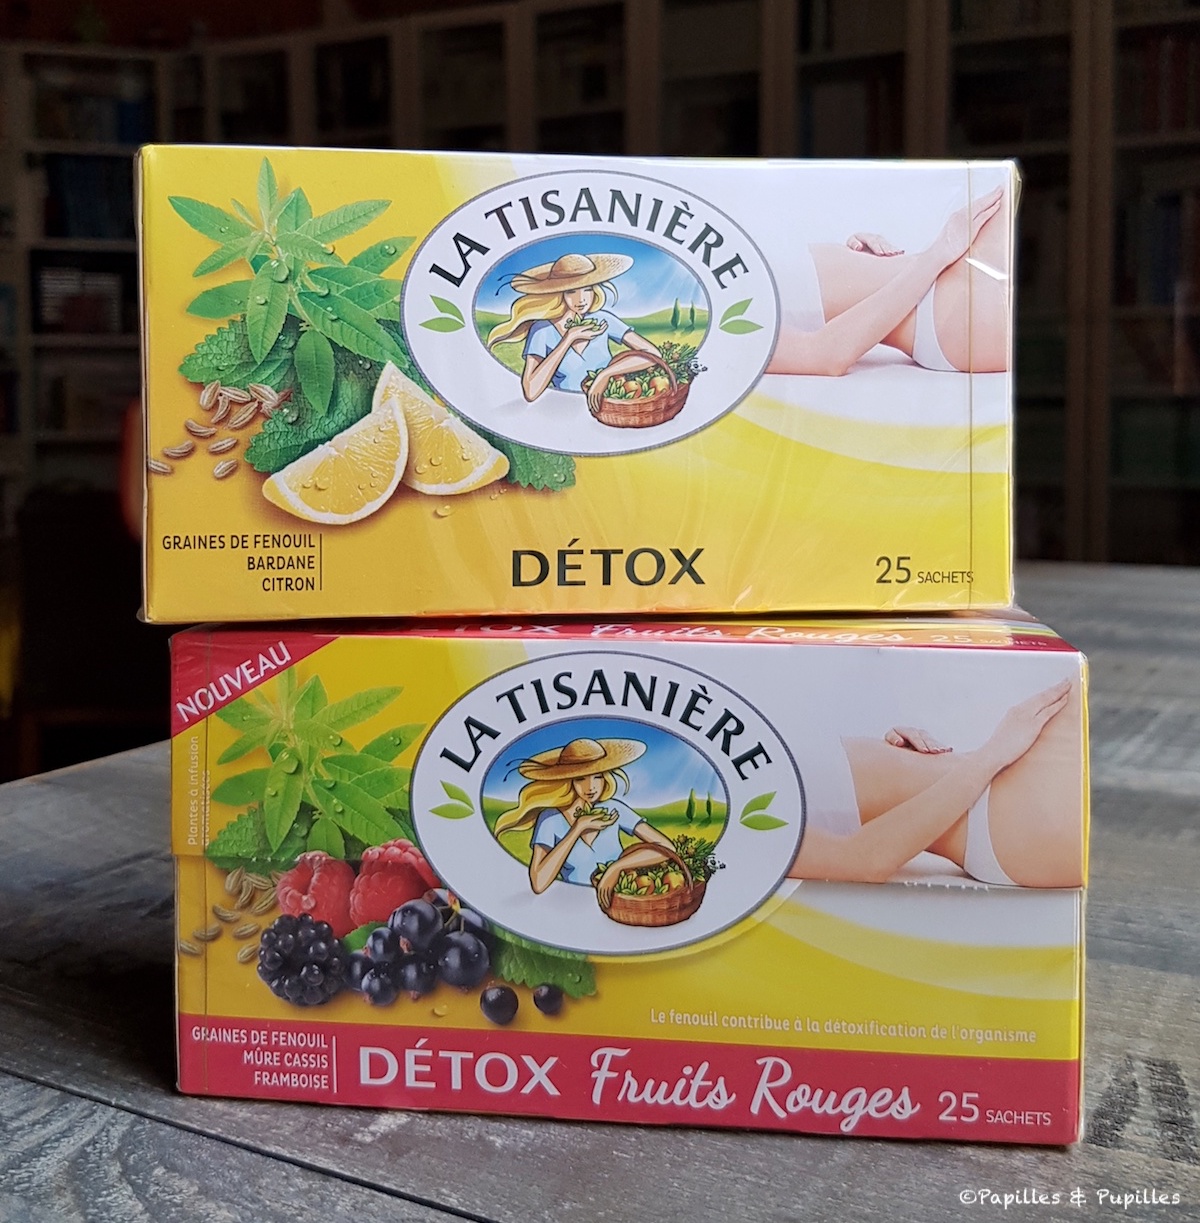  Detox citron et detox fruits rouges - La Tisanière